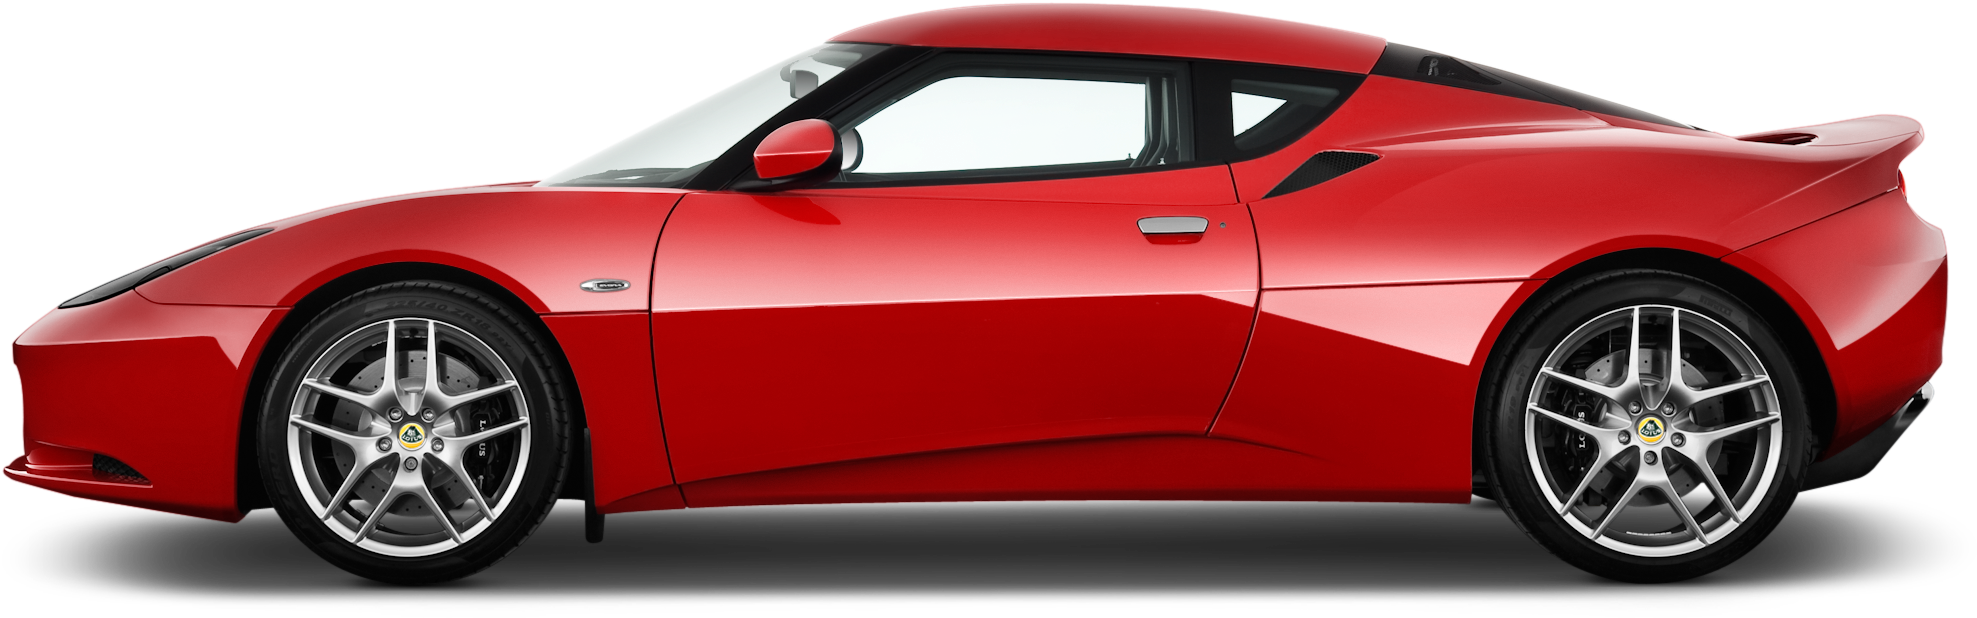 Red Ferrari Side Profile